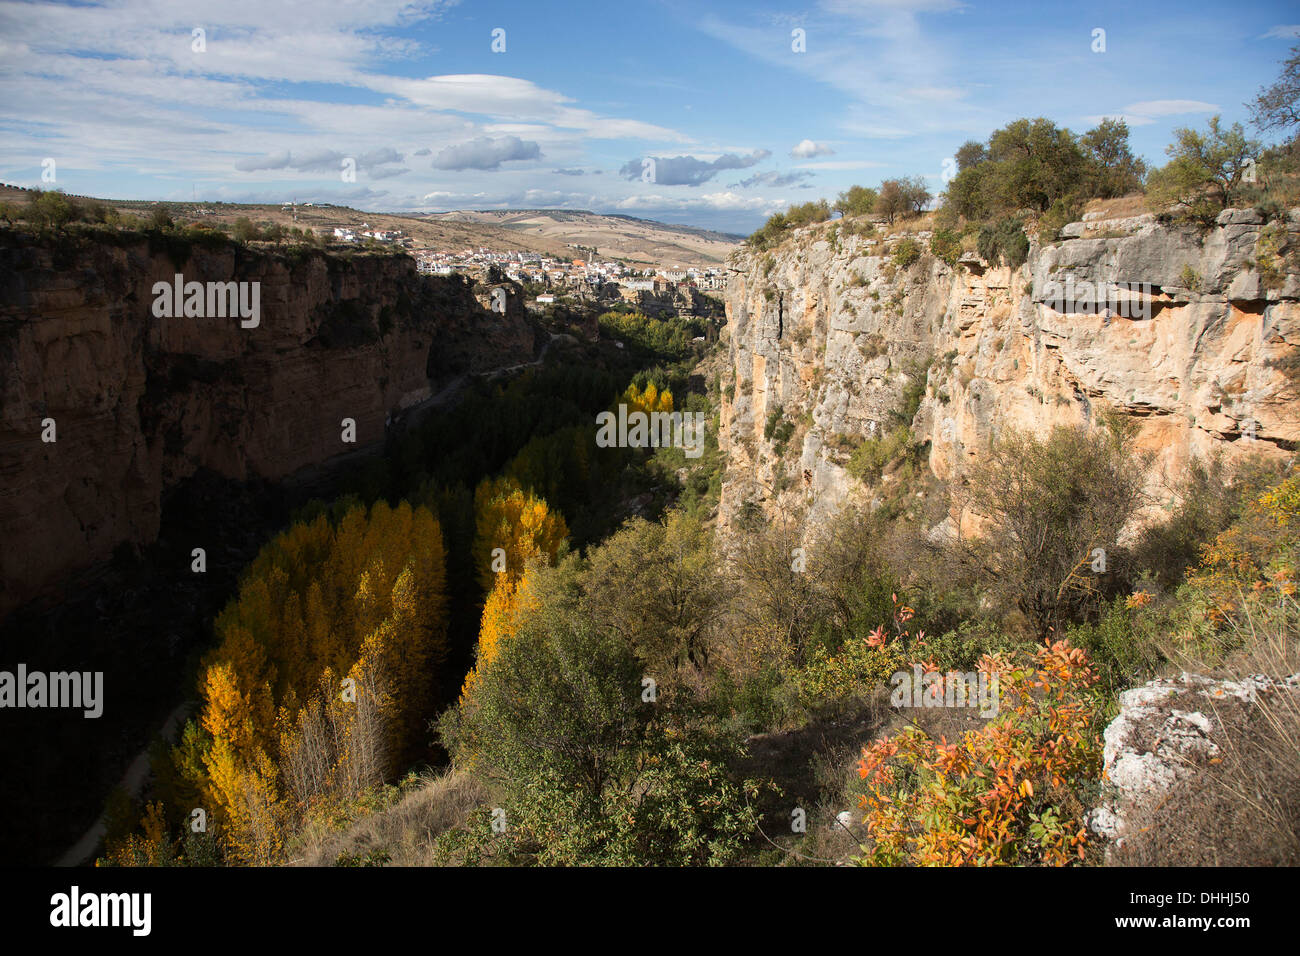 Les arbres d'automne avec les feuilles jaunissent en Alhama de Granada gorge (Canon de los Tajos), Andalousie, espagne. Banque D'Images